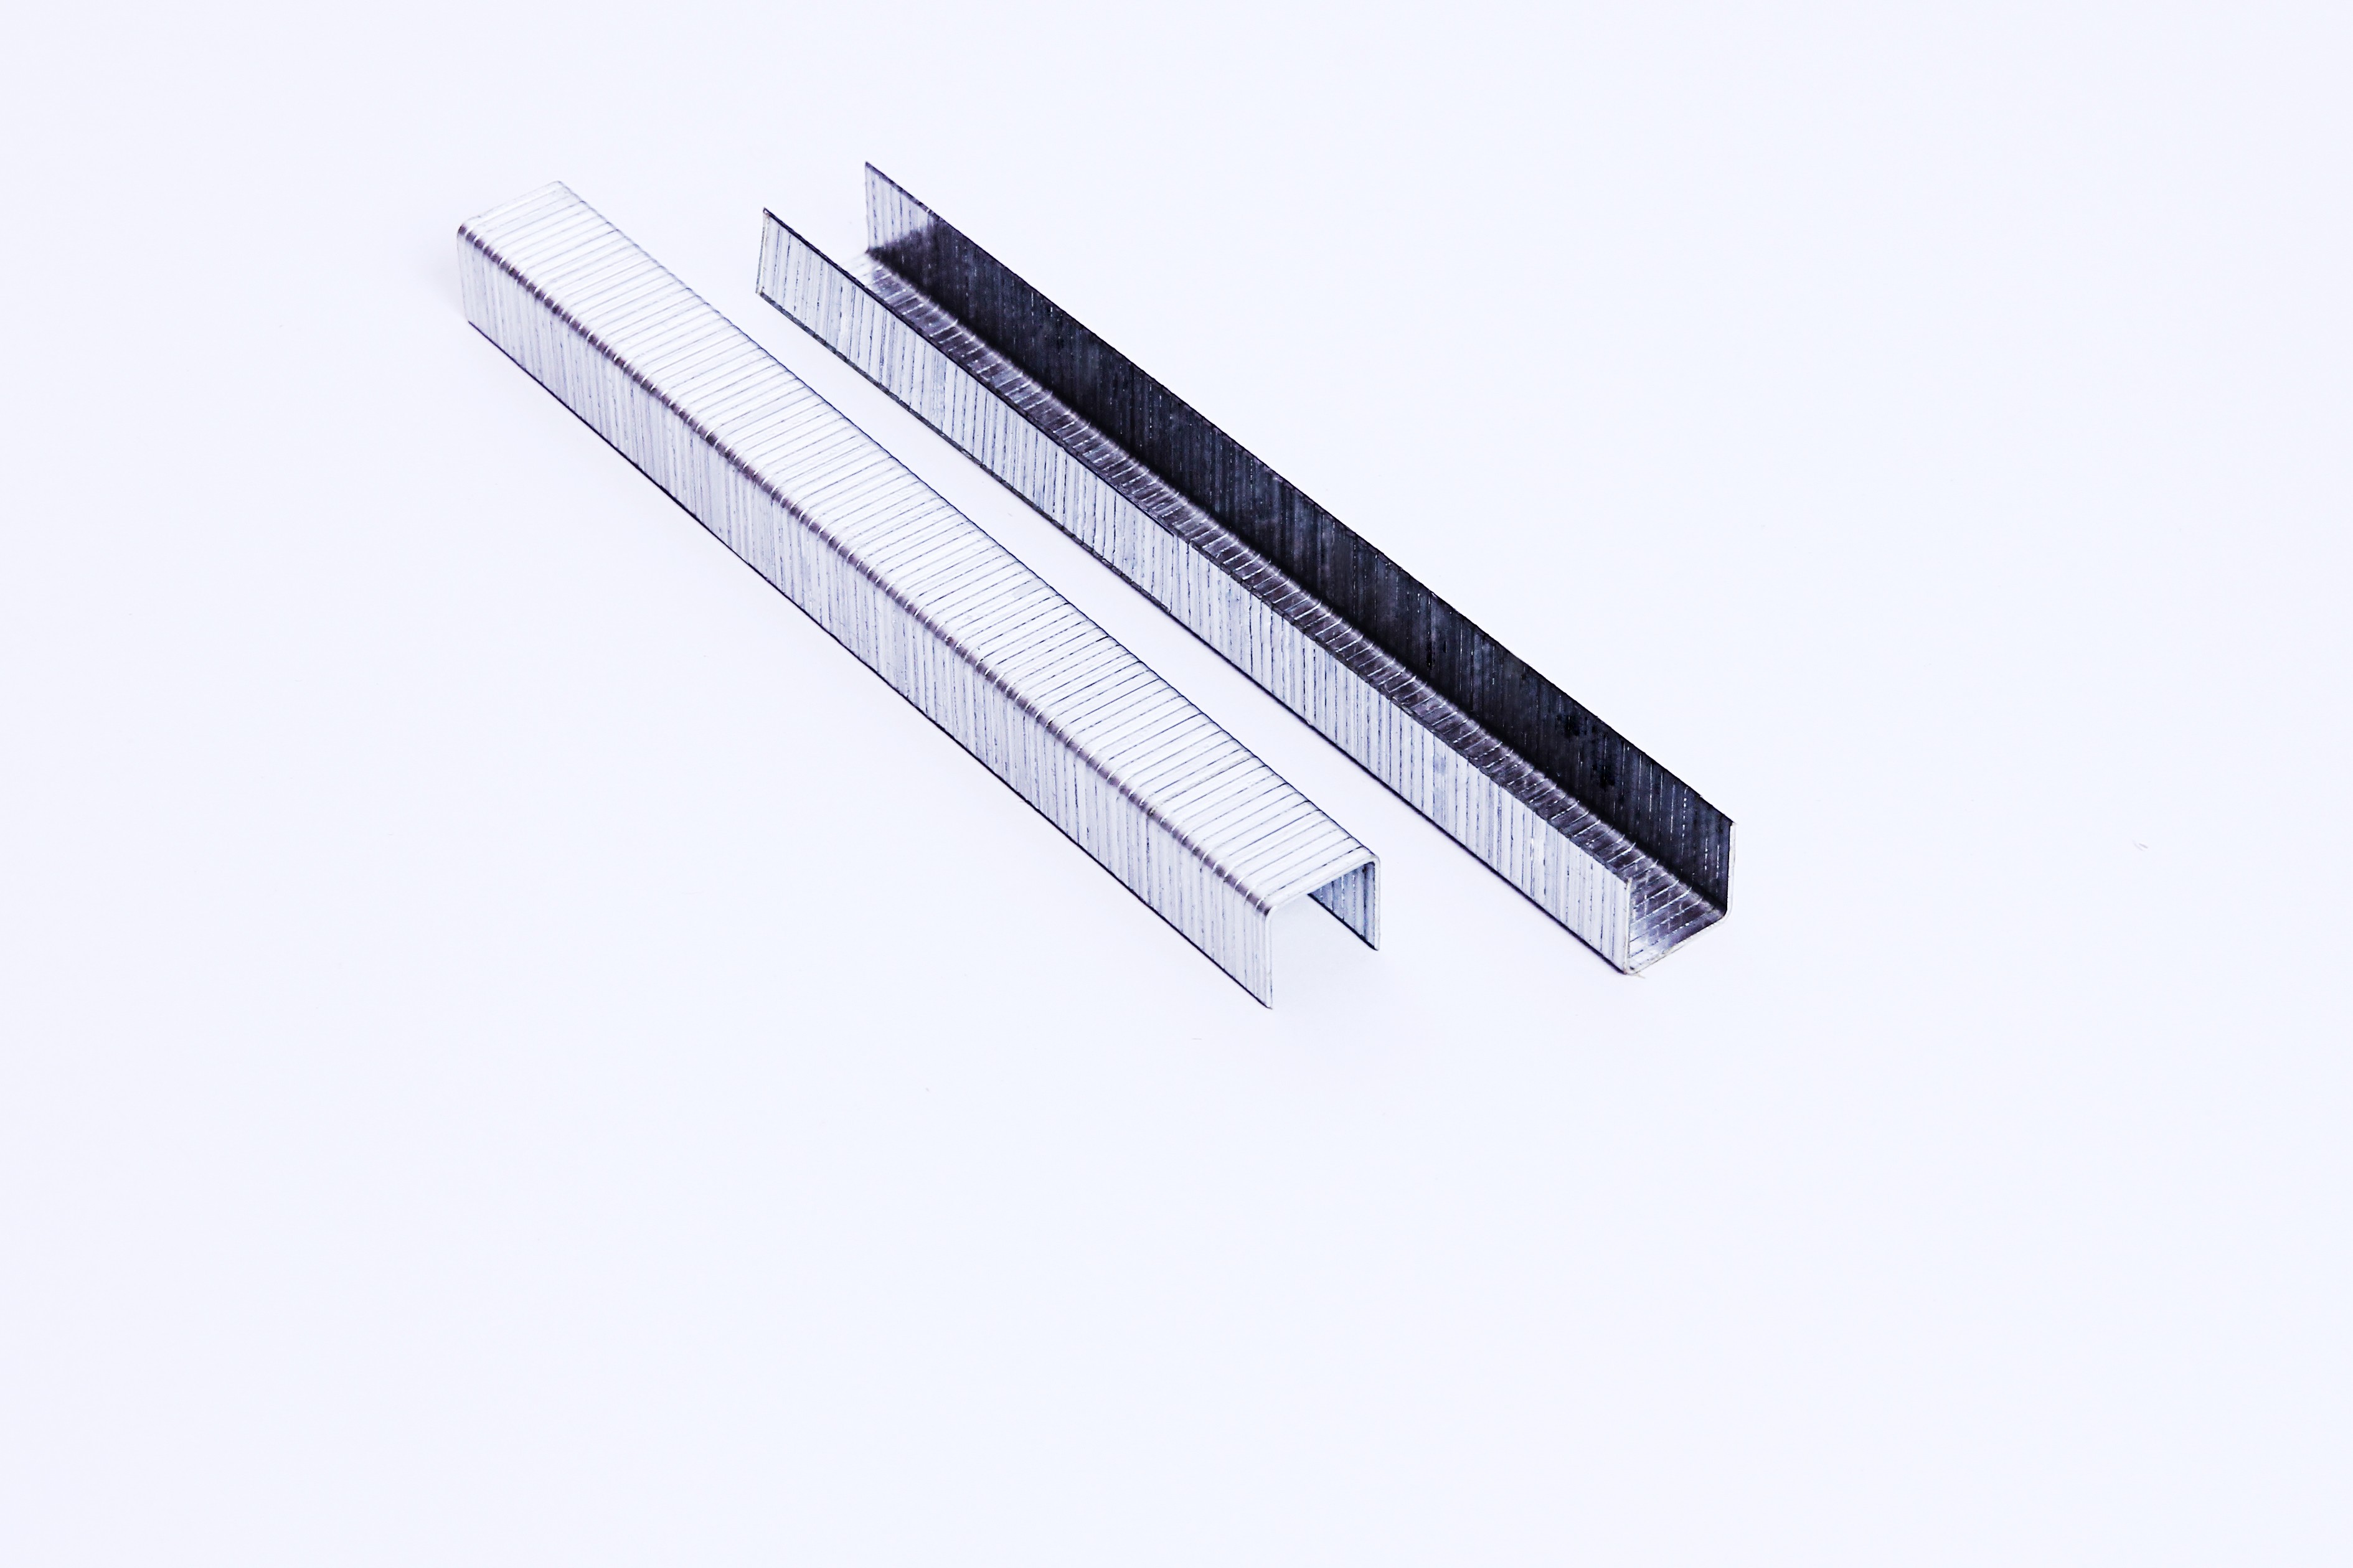 Aluminium Staples A11 Staples For Stapler Pin